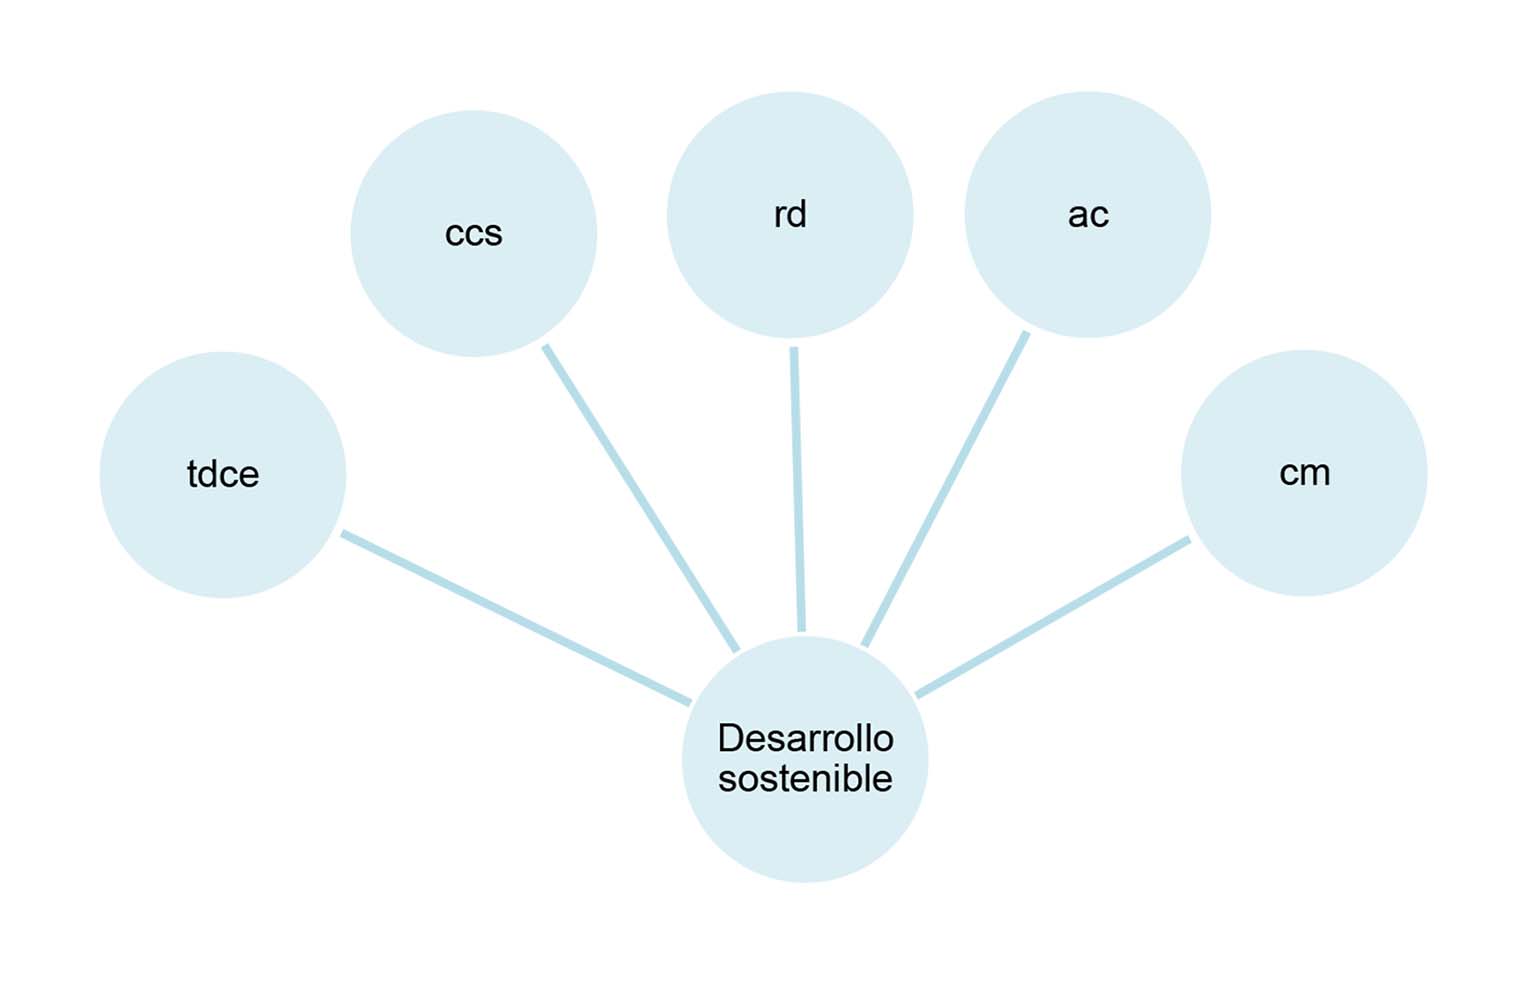 Modelo teórico en cinco dimensiones basado en constructos del desarrollo sostenible